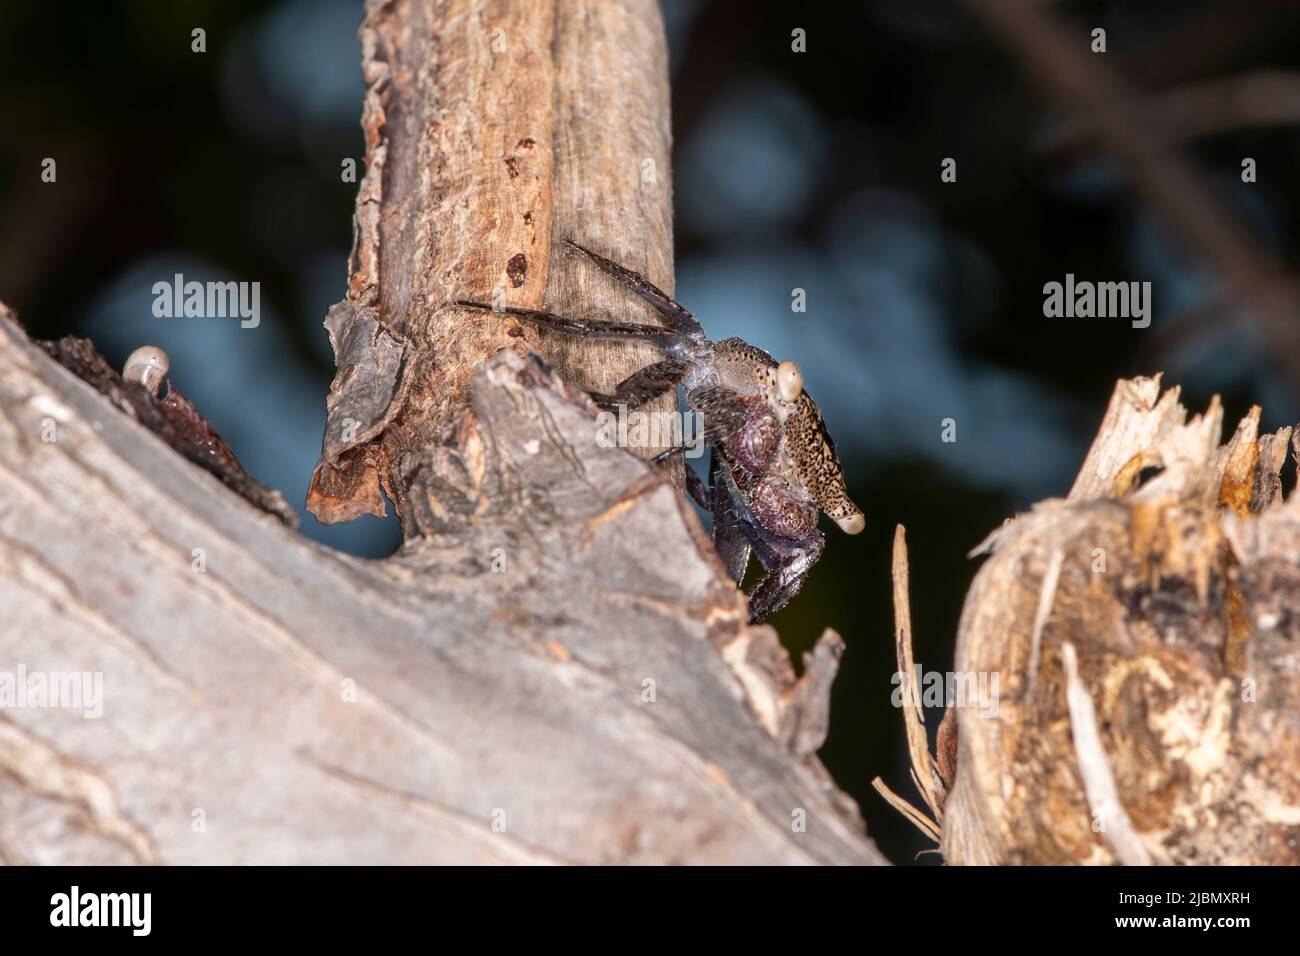 Islamorada, Florida nelle chiavi. Il granchio di mangrovie (Aratus pisonii) è un scavenger e predatore di piccoli invertebrati e di alcuni protisti. Foto Stock